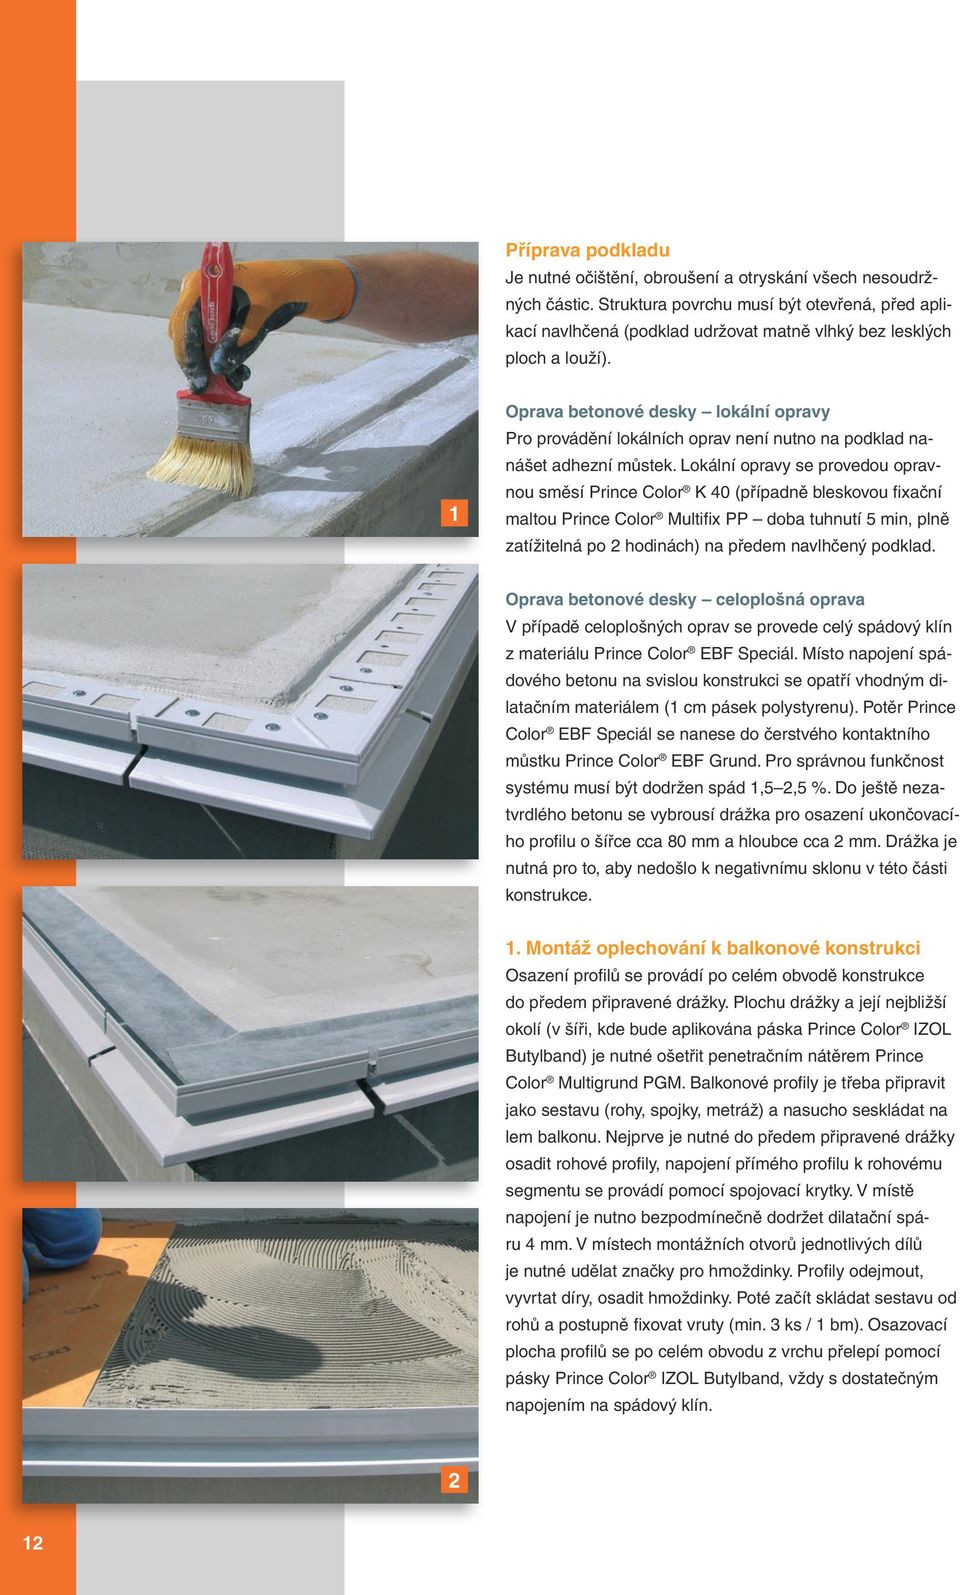 1 Oprava betonové desky lokální opravy Pro provádění lokálních oprav není nutno na podklad nanášet adhezní můstek.